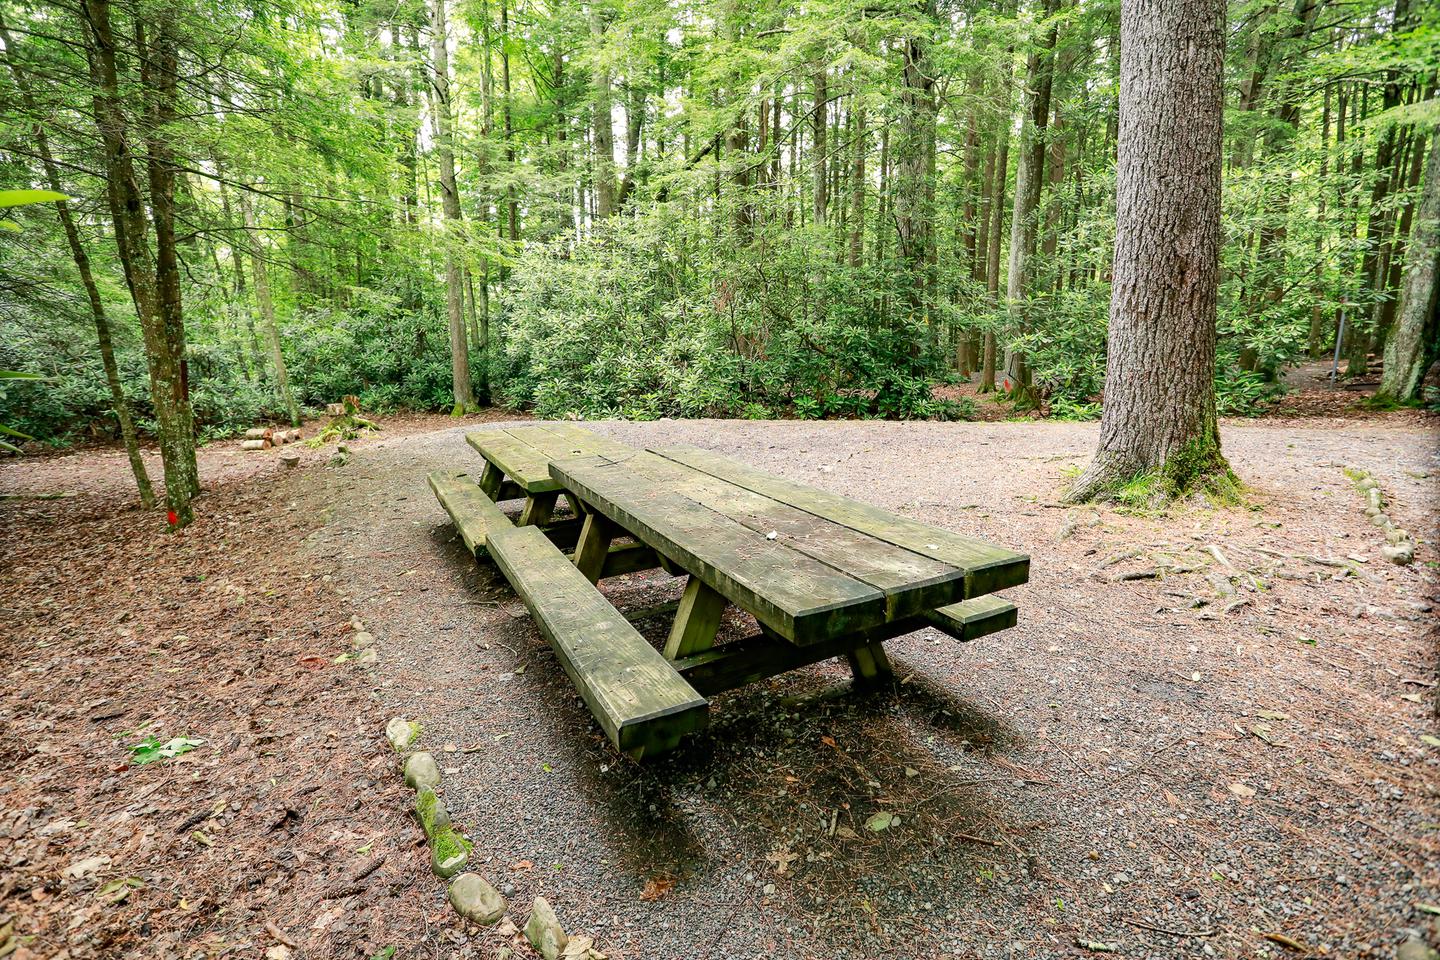 Campsite 2 picture 3Campsite 2 picnic table